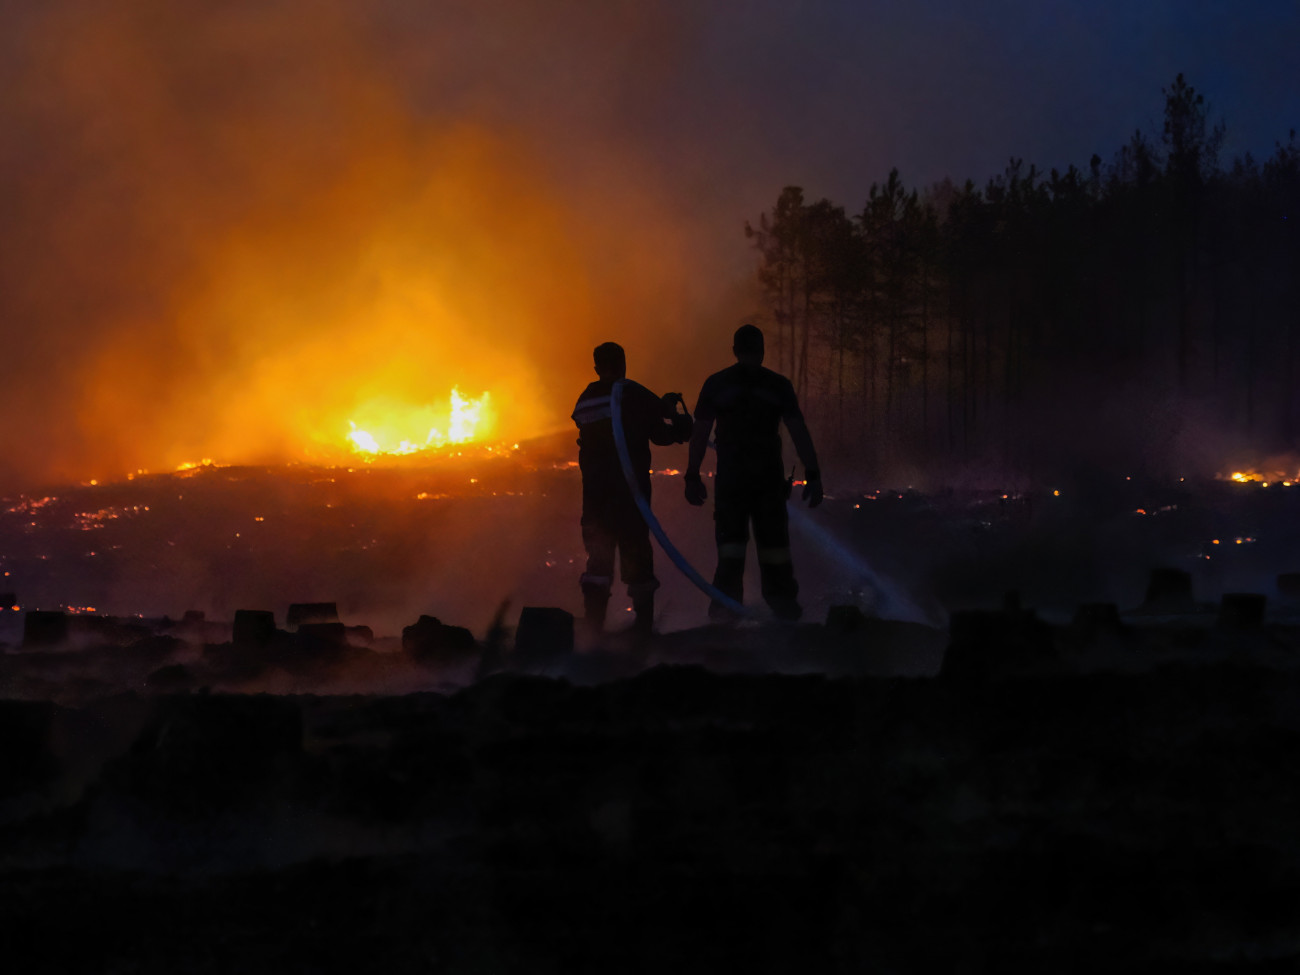 Soltszentimre, 2022. július 14.
Tűzoltók oltják 2022. július 13-án az Izsák és Soltszentimre közötti erdőben délután keletkezett tüzet. Mintegy ötven hektáron égett részben az aljnövényzet, részben a fák koronája. Személyi sérülésről nem érkezett információ.
MTI/Donka Ferenc